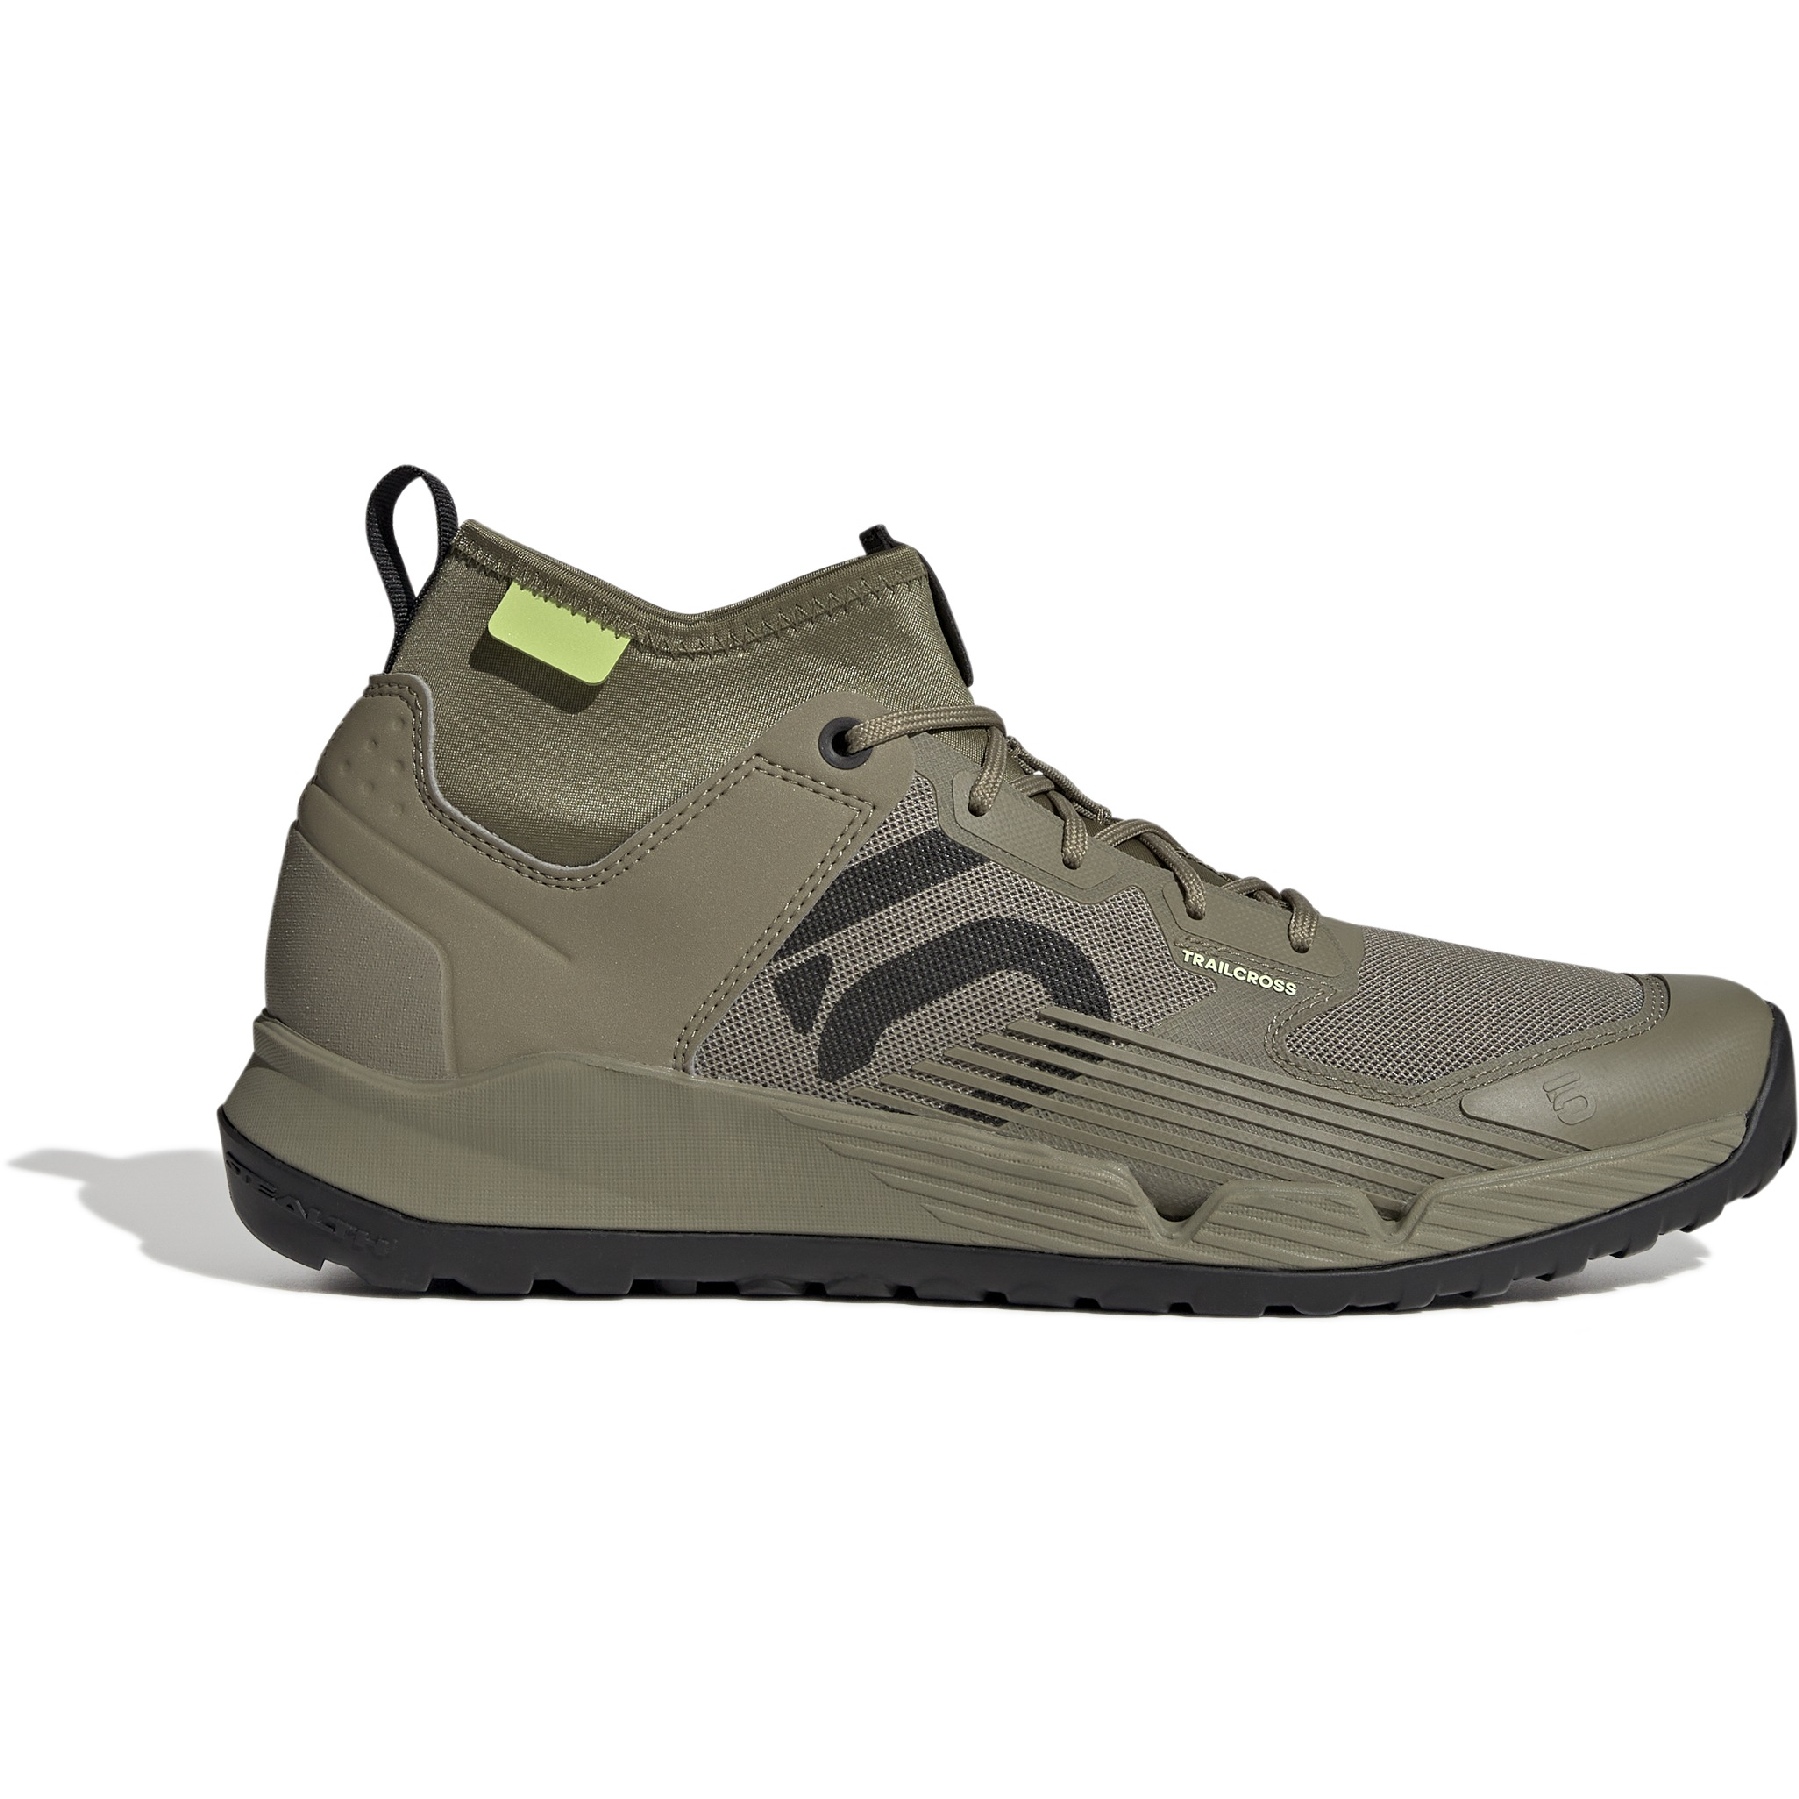 Produktbild von Five Ten Trailcross XT Mountainbike Schuhe - Orbit Green / Carbon / Pulse Lime